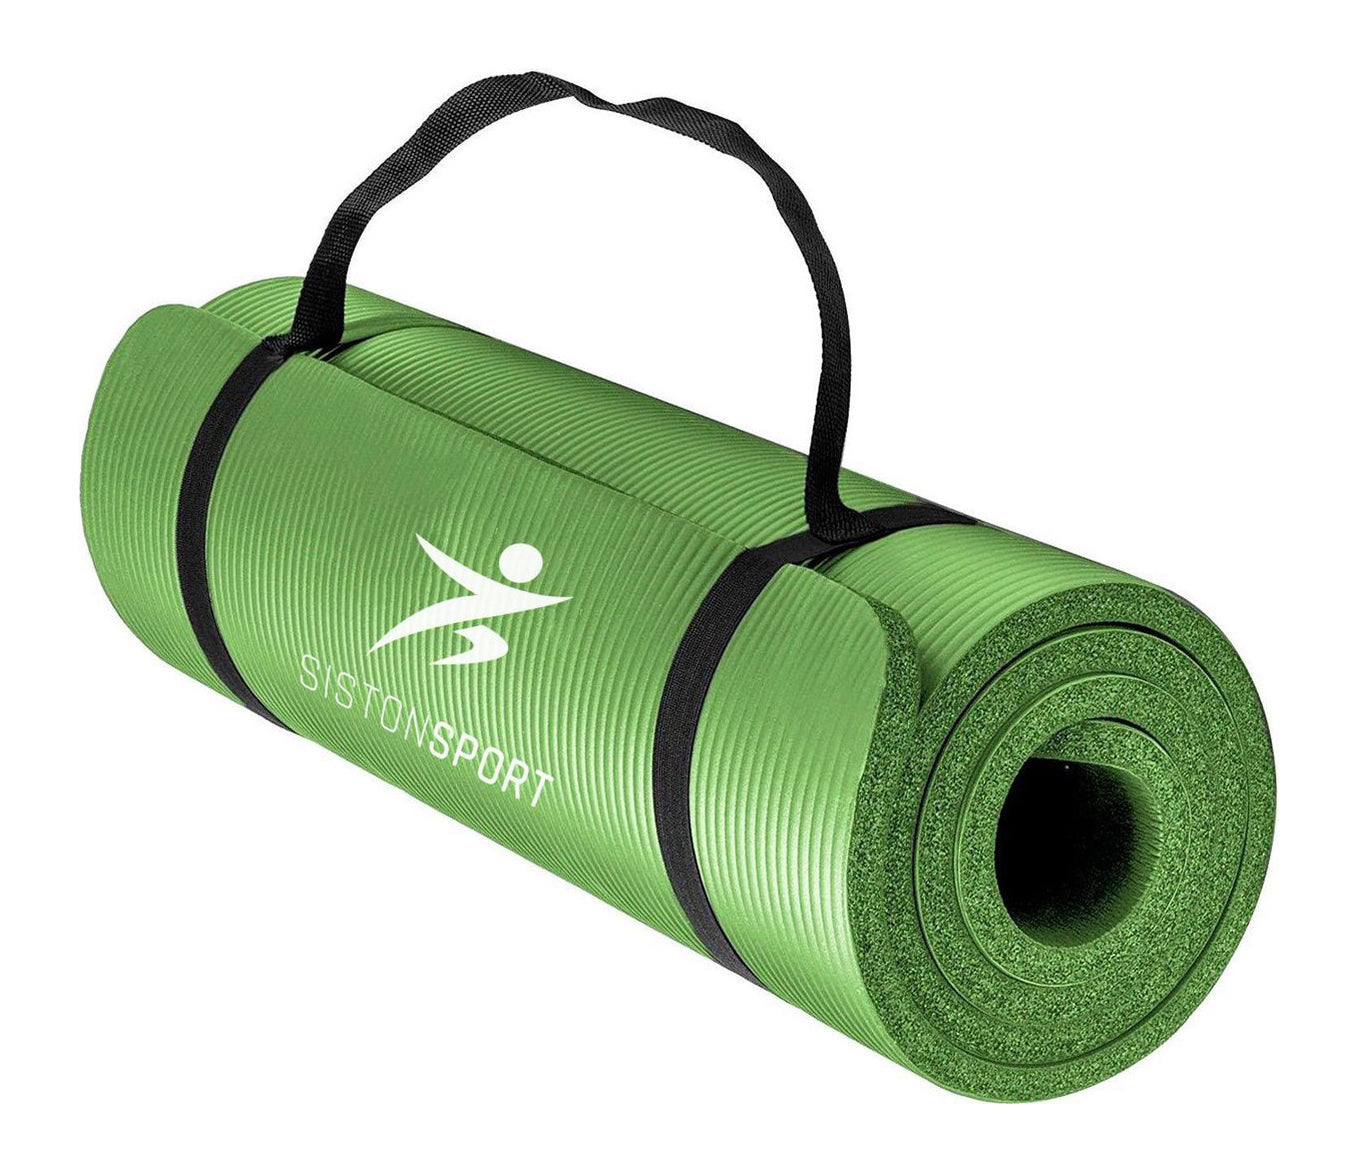 Herrie opgraven Hong Kong Fitness / Yogamat - 183 cm x 61 cm x 1 cm – Groen - Huidvriendelijk –  Sistonsport.nl